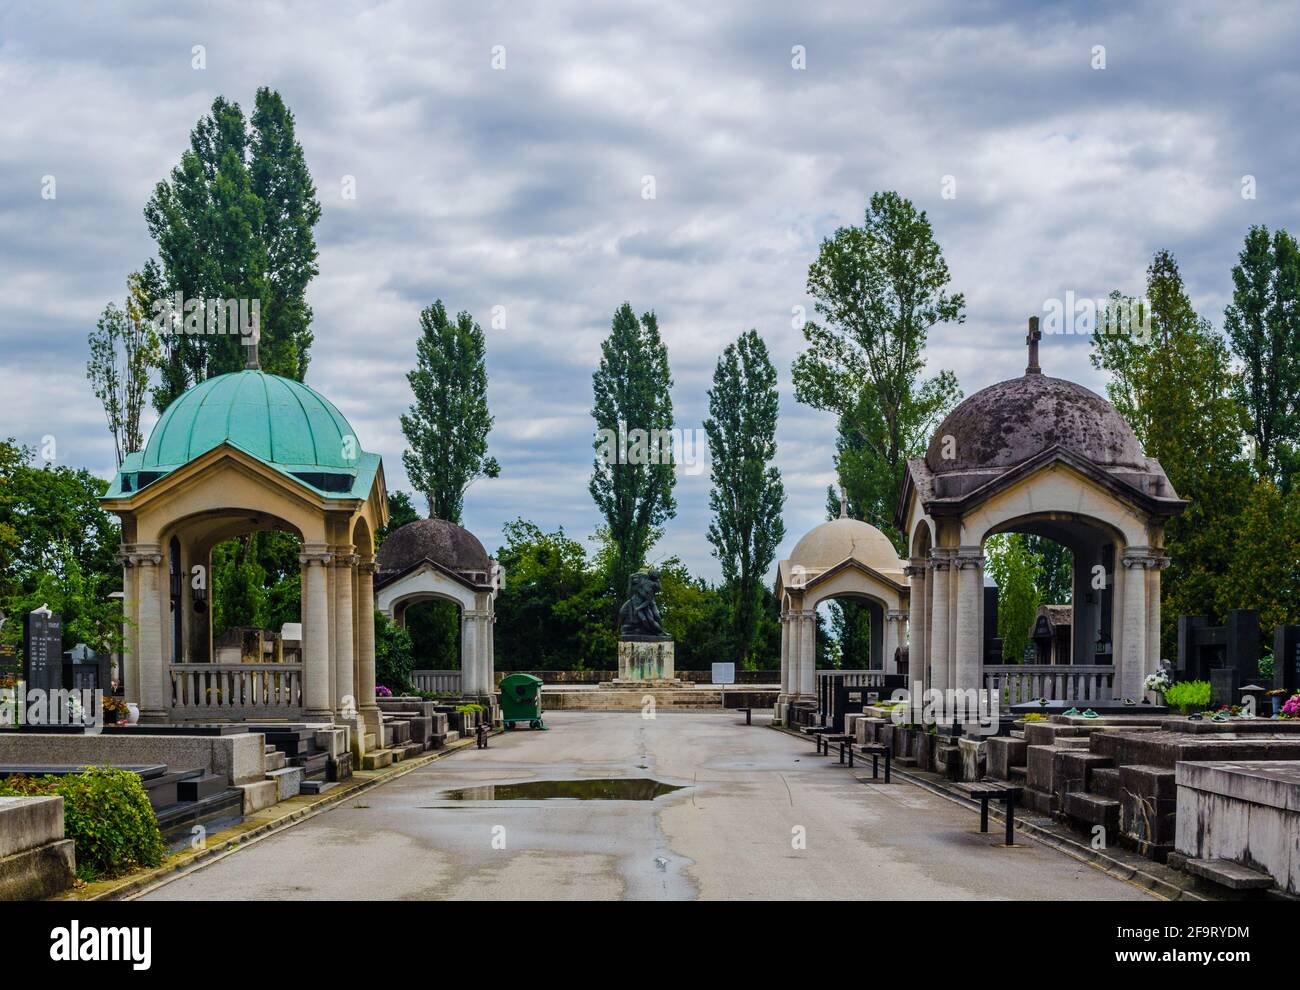 Le cimetière Mirogoj est un parc de cimetière considéré comme l'un des monuments les plus remarquables de la ville de Zagreb. Banque D'Images